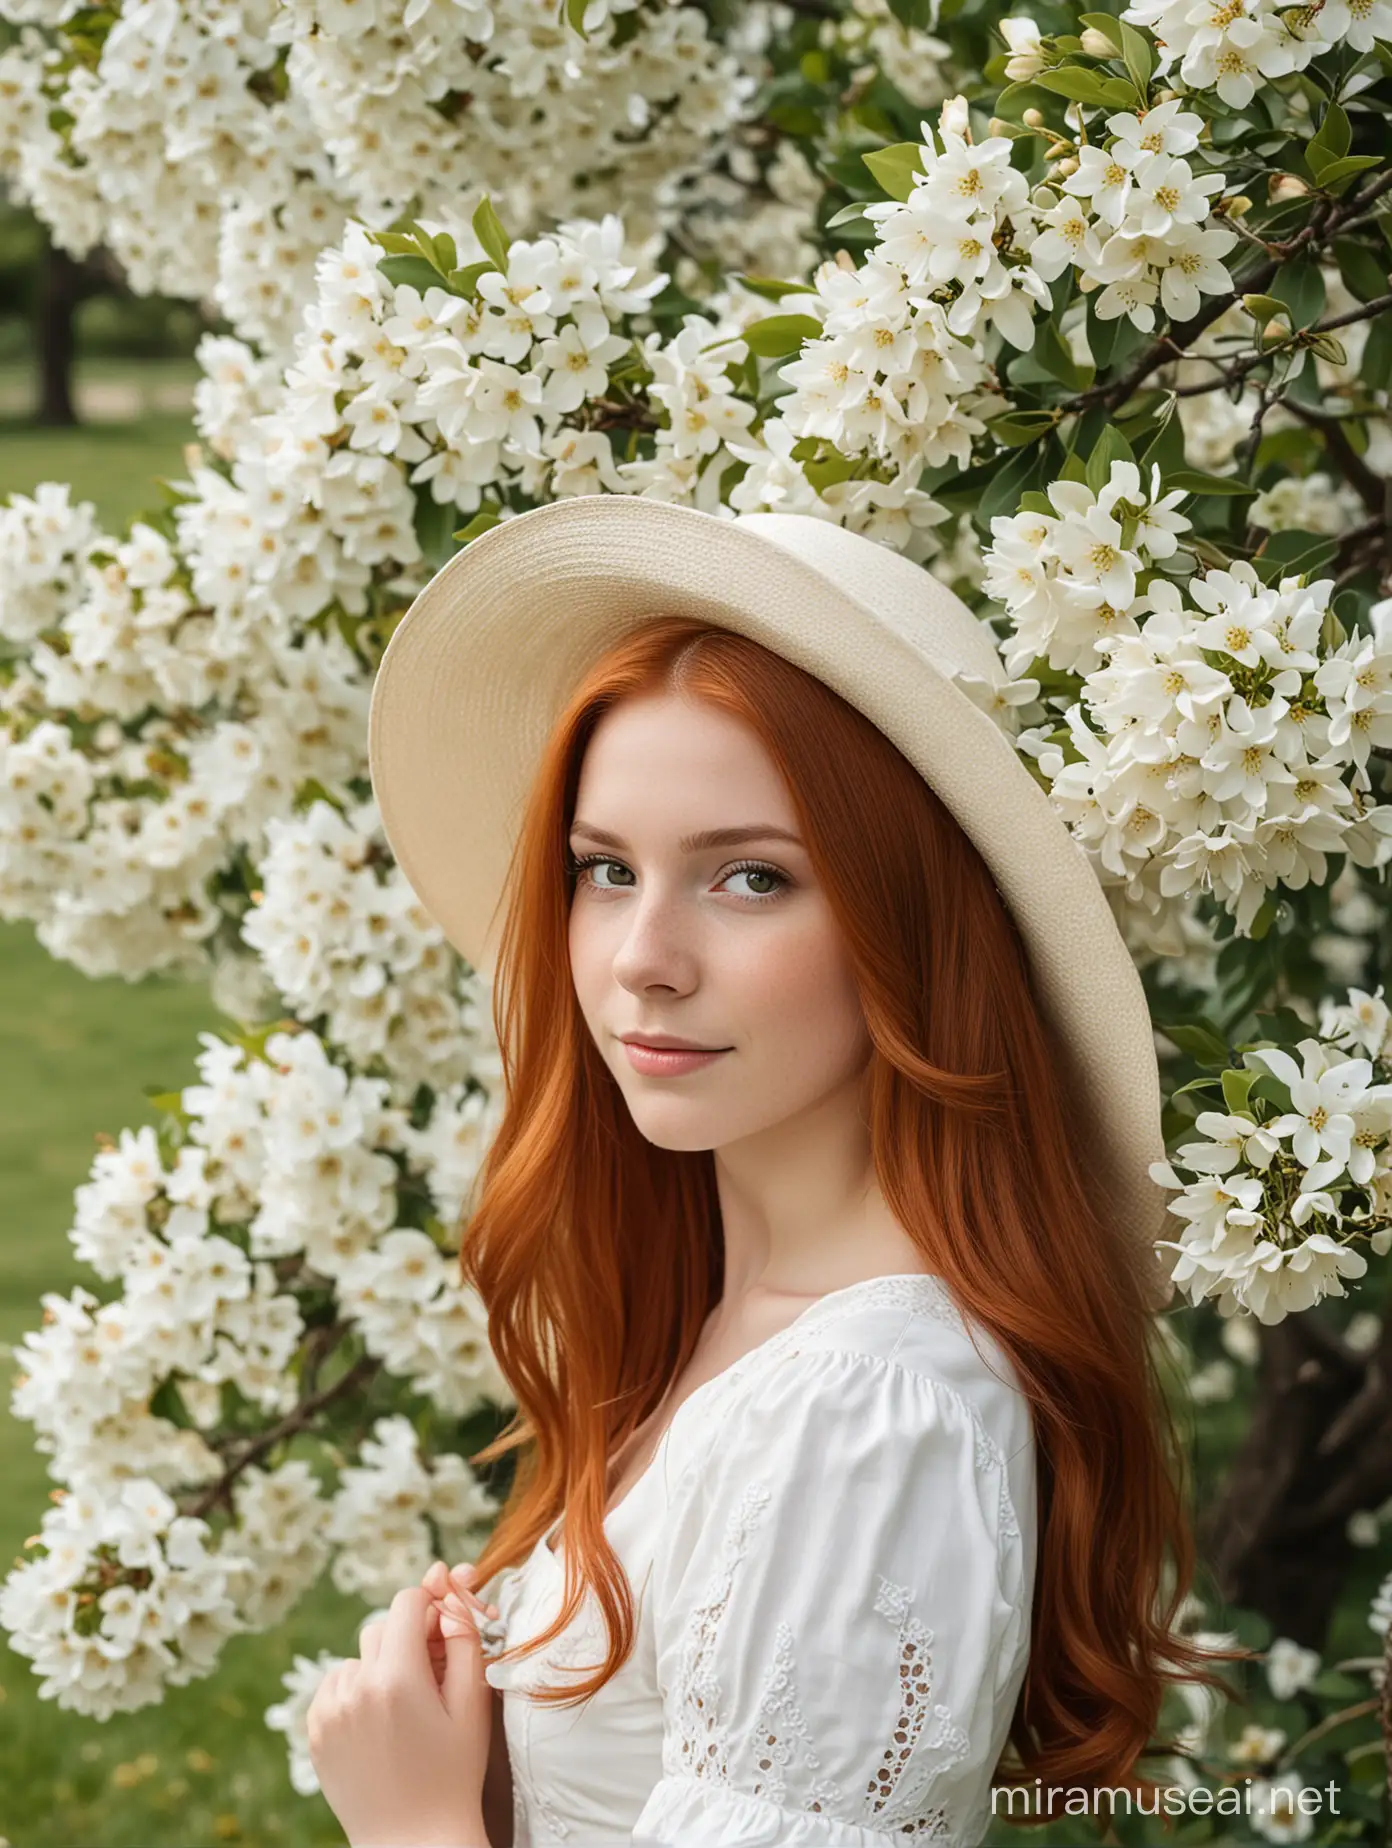 عکس پرتره از دختری جوان با موهای قرمز و کلاه سفید و لباس کلاسیک در کنار شکوفه های سفید 
  درخت 